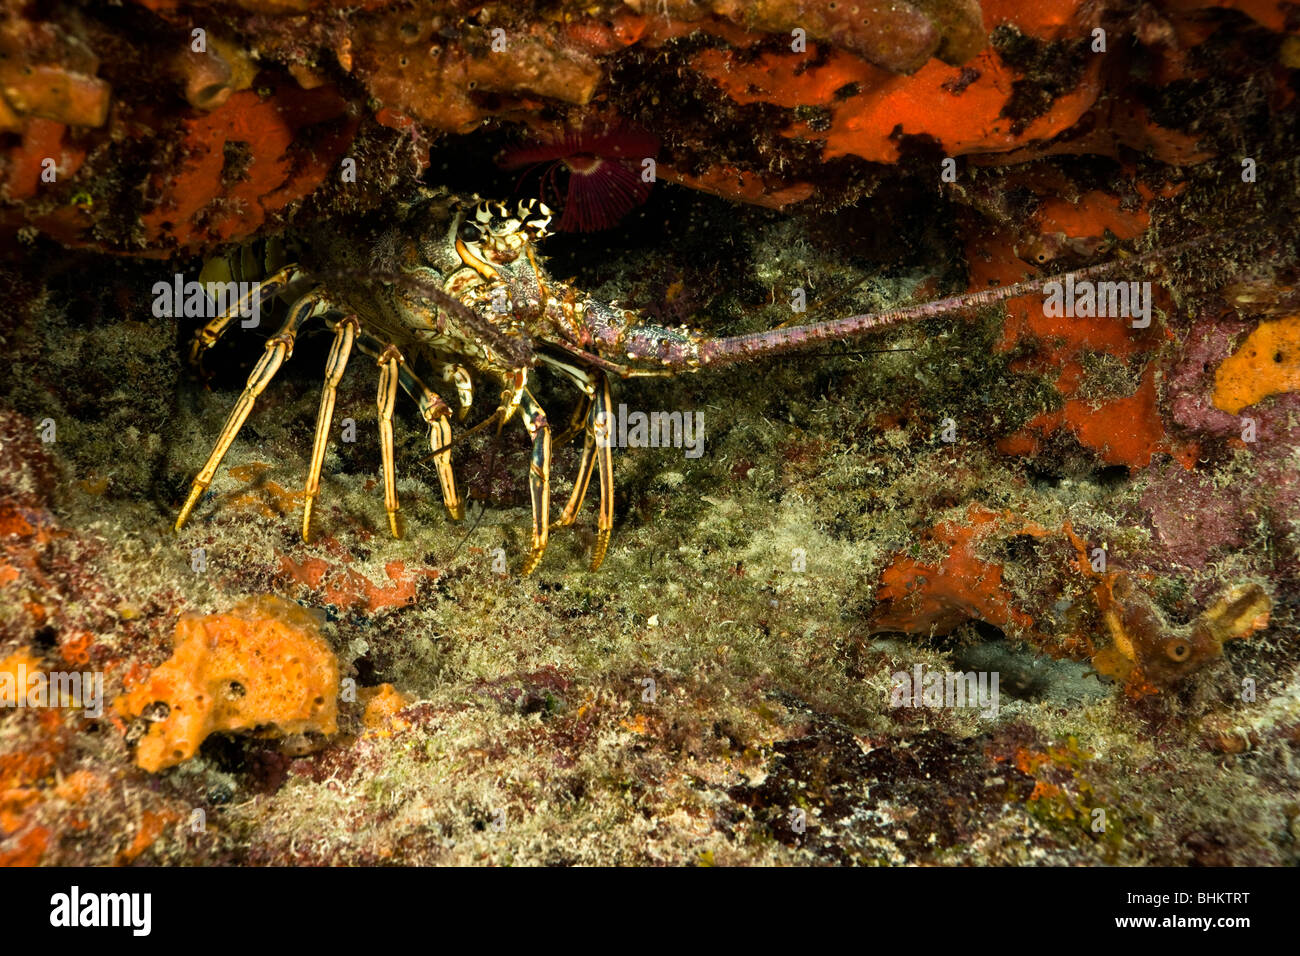 Karibik Langusten unter Red schwamm verkrustete Coral Reef Vorsprung durch kleine Braten Fisch Unterwasser Foto John Pennekamp Marine sanctuary umgeben Stockfoto